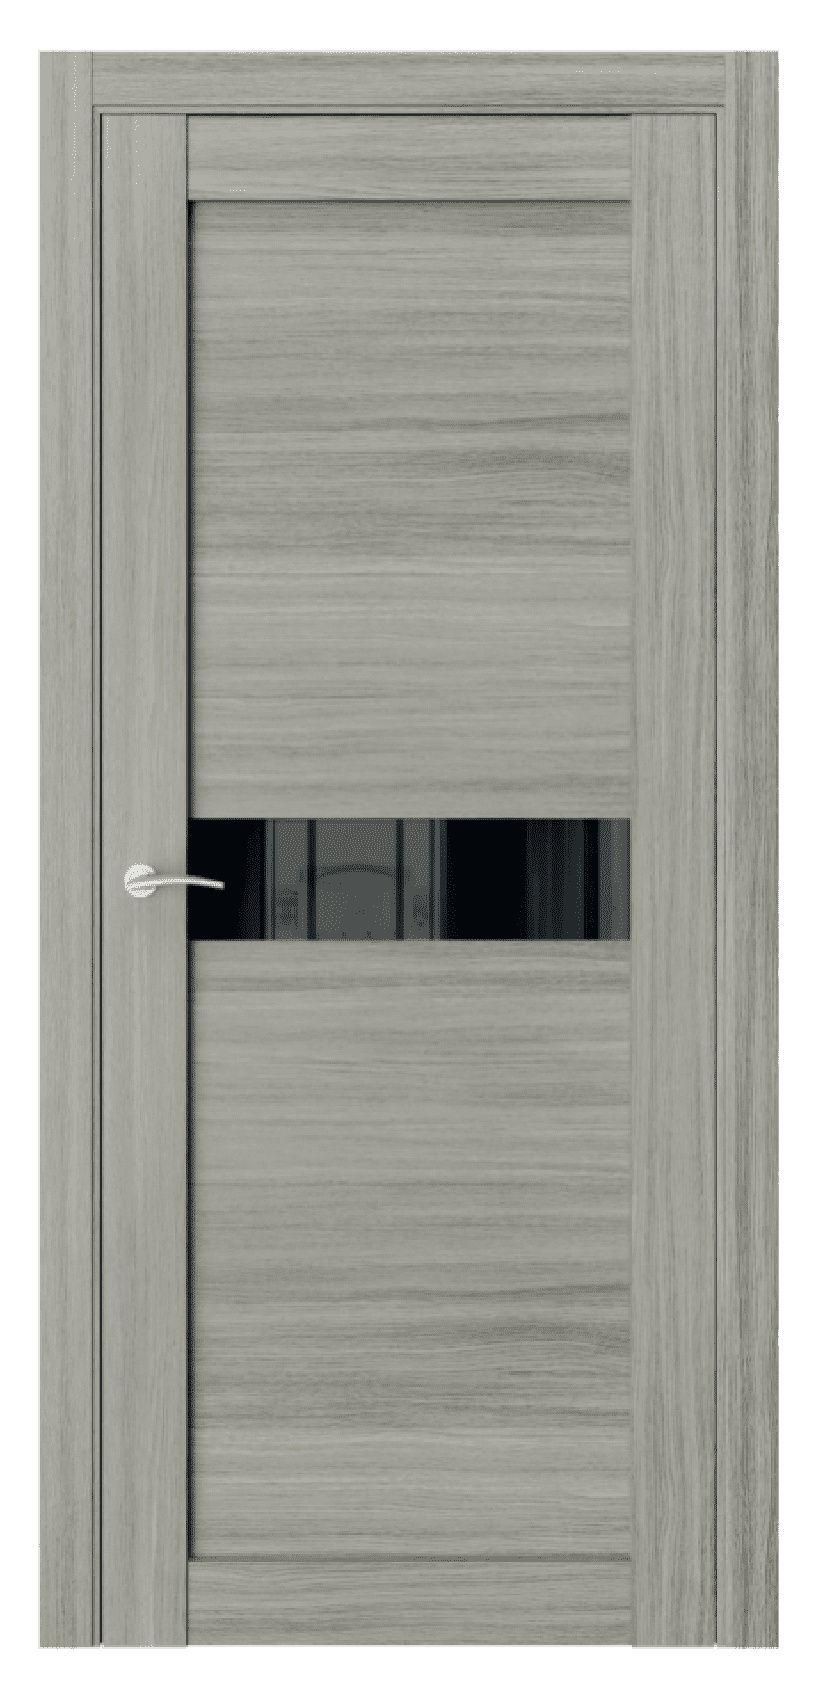 Questdoors Межкомнатная дверь Q51, арт. 17478 - фото №1